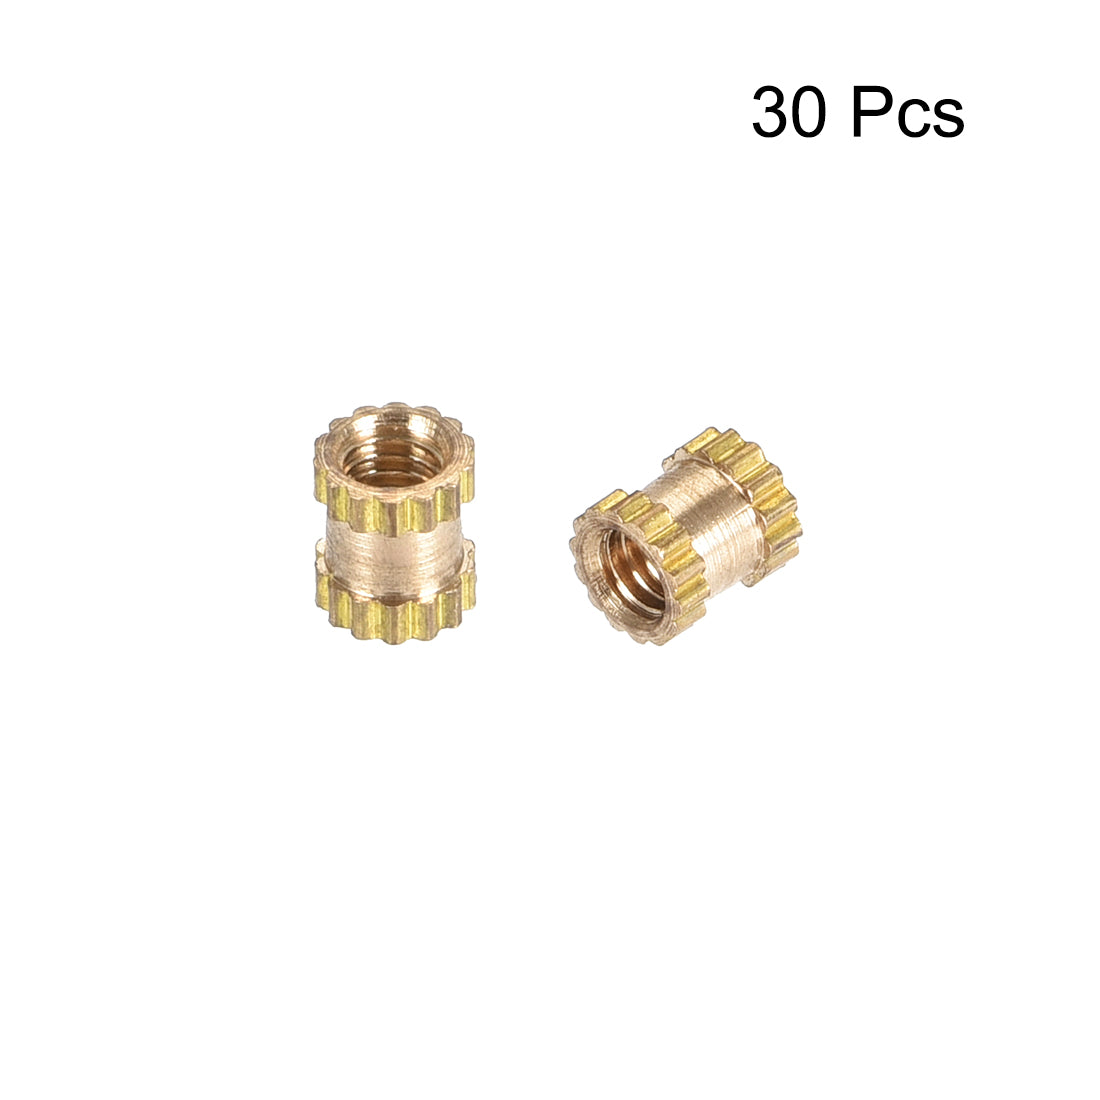 uxcell Uxcell Knurled Insert Nuts, M2.5 x 4mm(L) x 3.5mm(OD) Female Thread Brass Embedment Assortment Kit, 30 Pcs